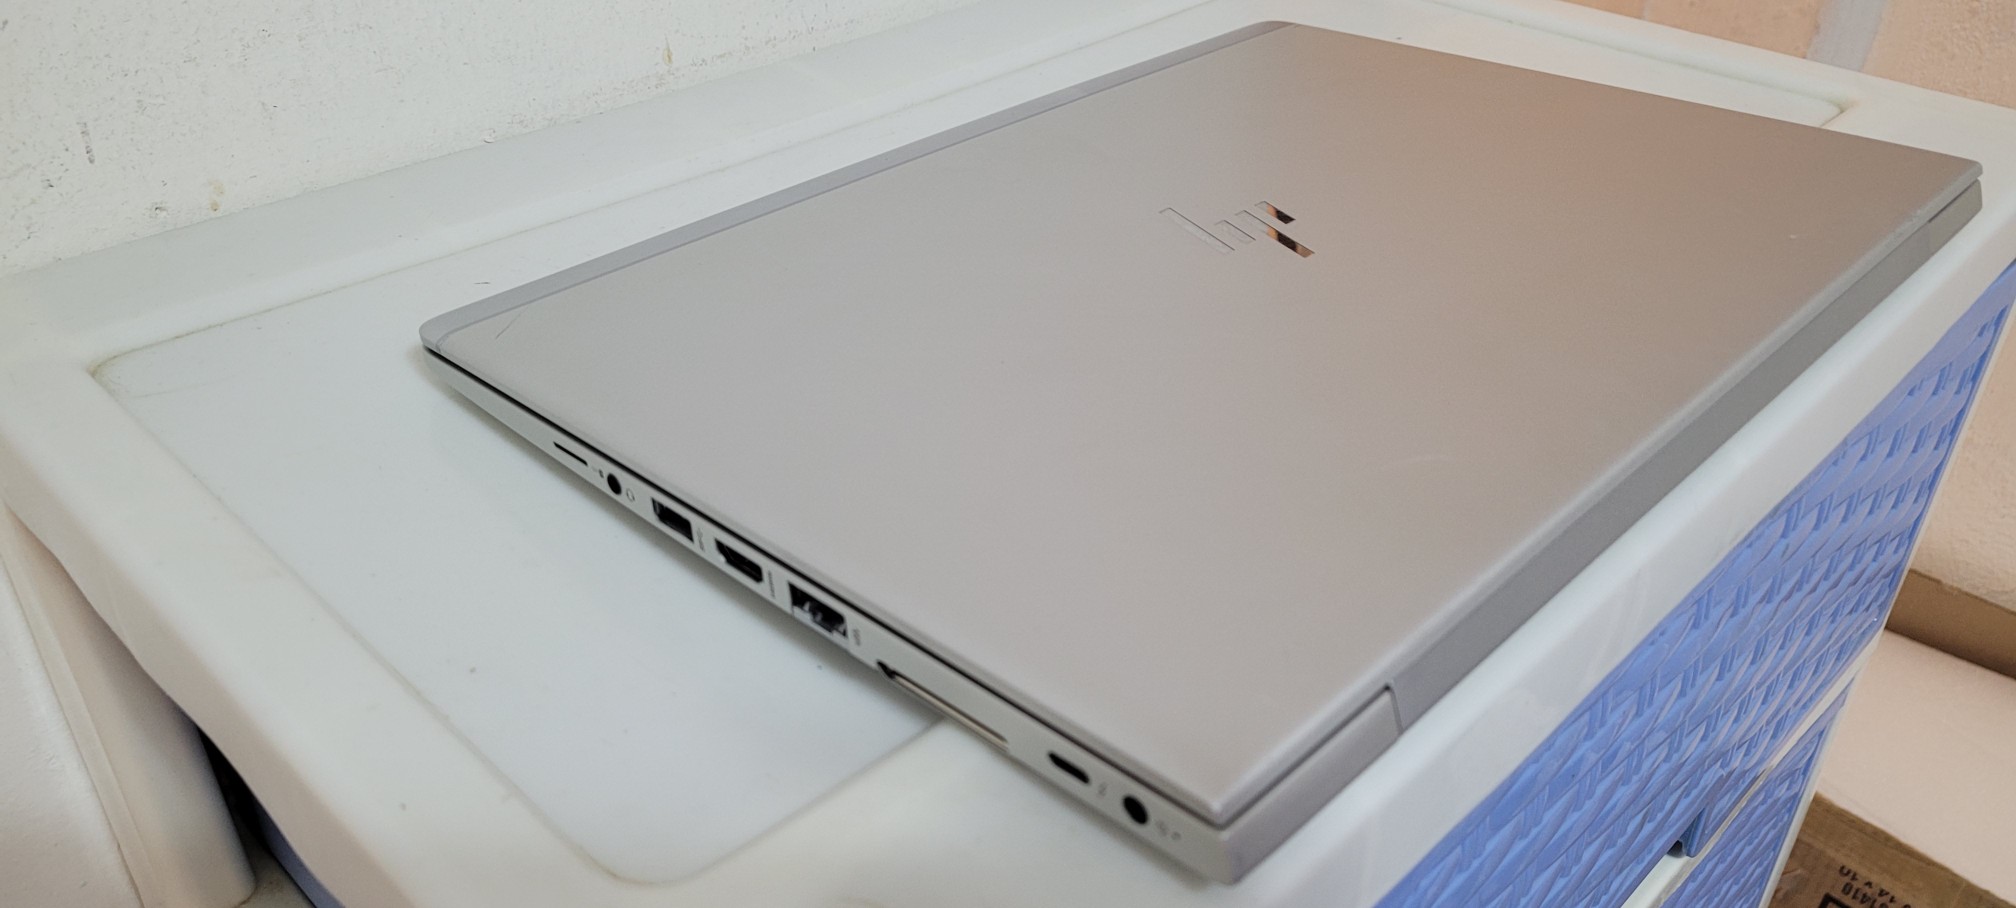 computadoras y laptops - laptop hp Slim 14 Pulg Core i5 7ma Gen Ram 8gb ddr4 Disco 256gb SSD FULL 1080Ñ 2